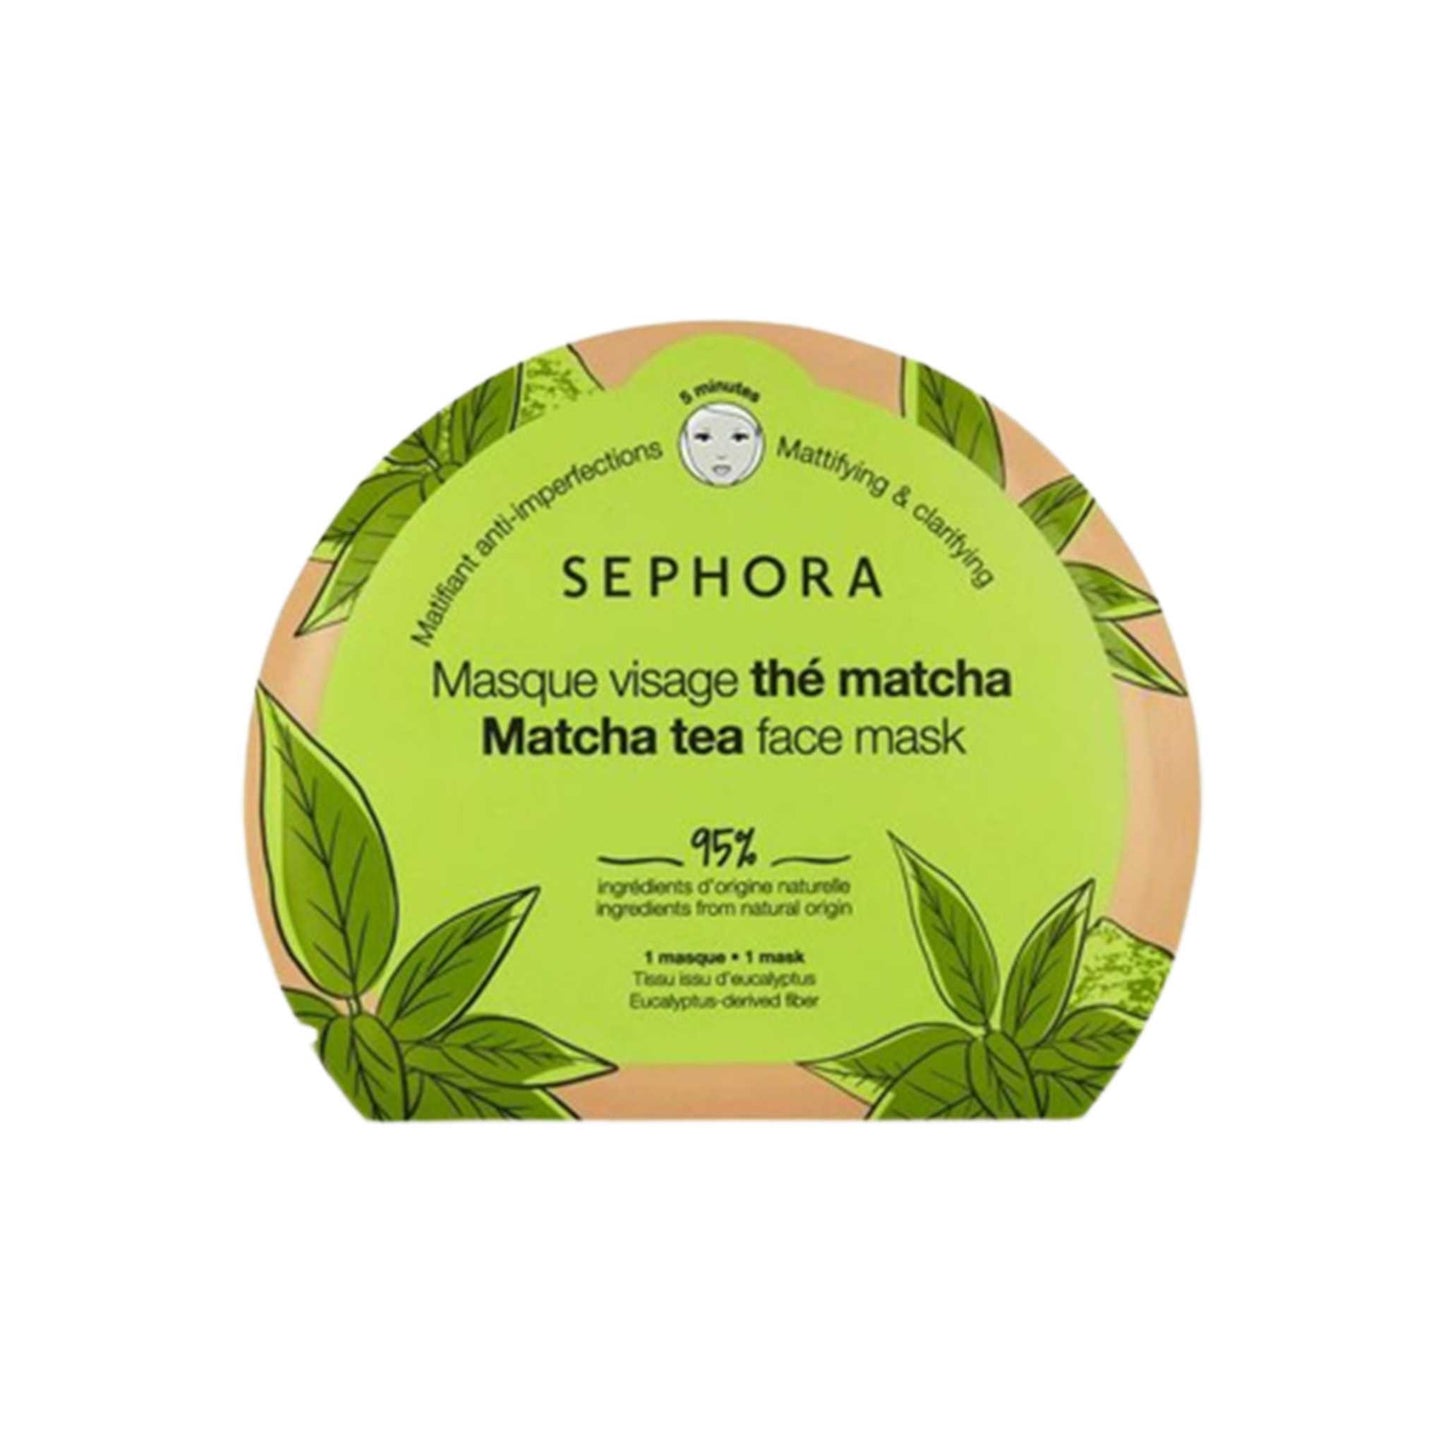 SEPHORA MATCHA TEA FACE MASK Sephora